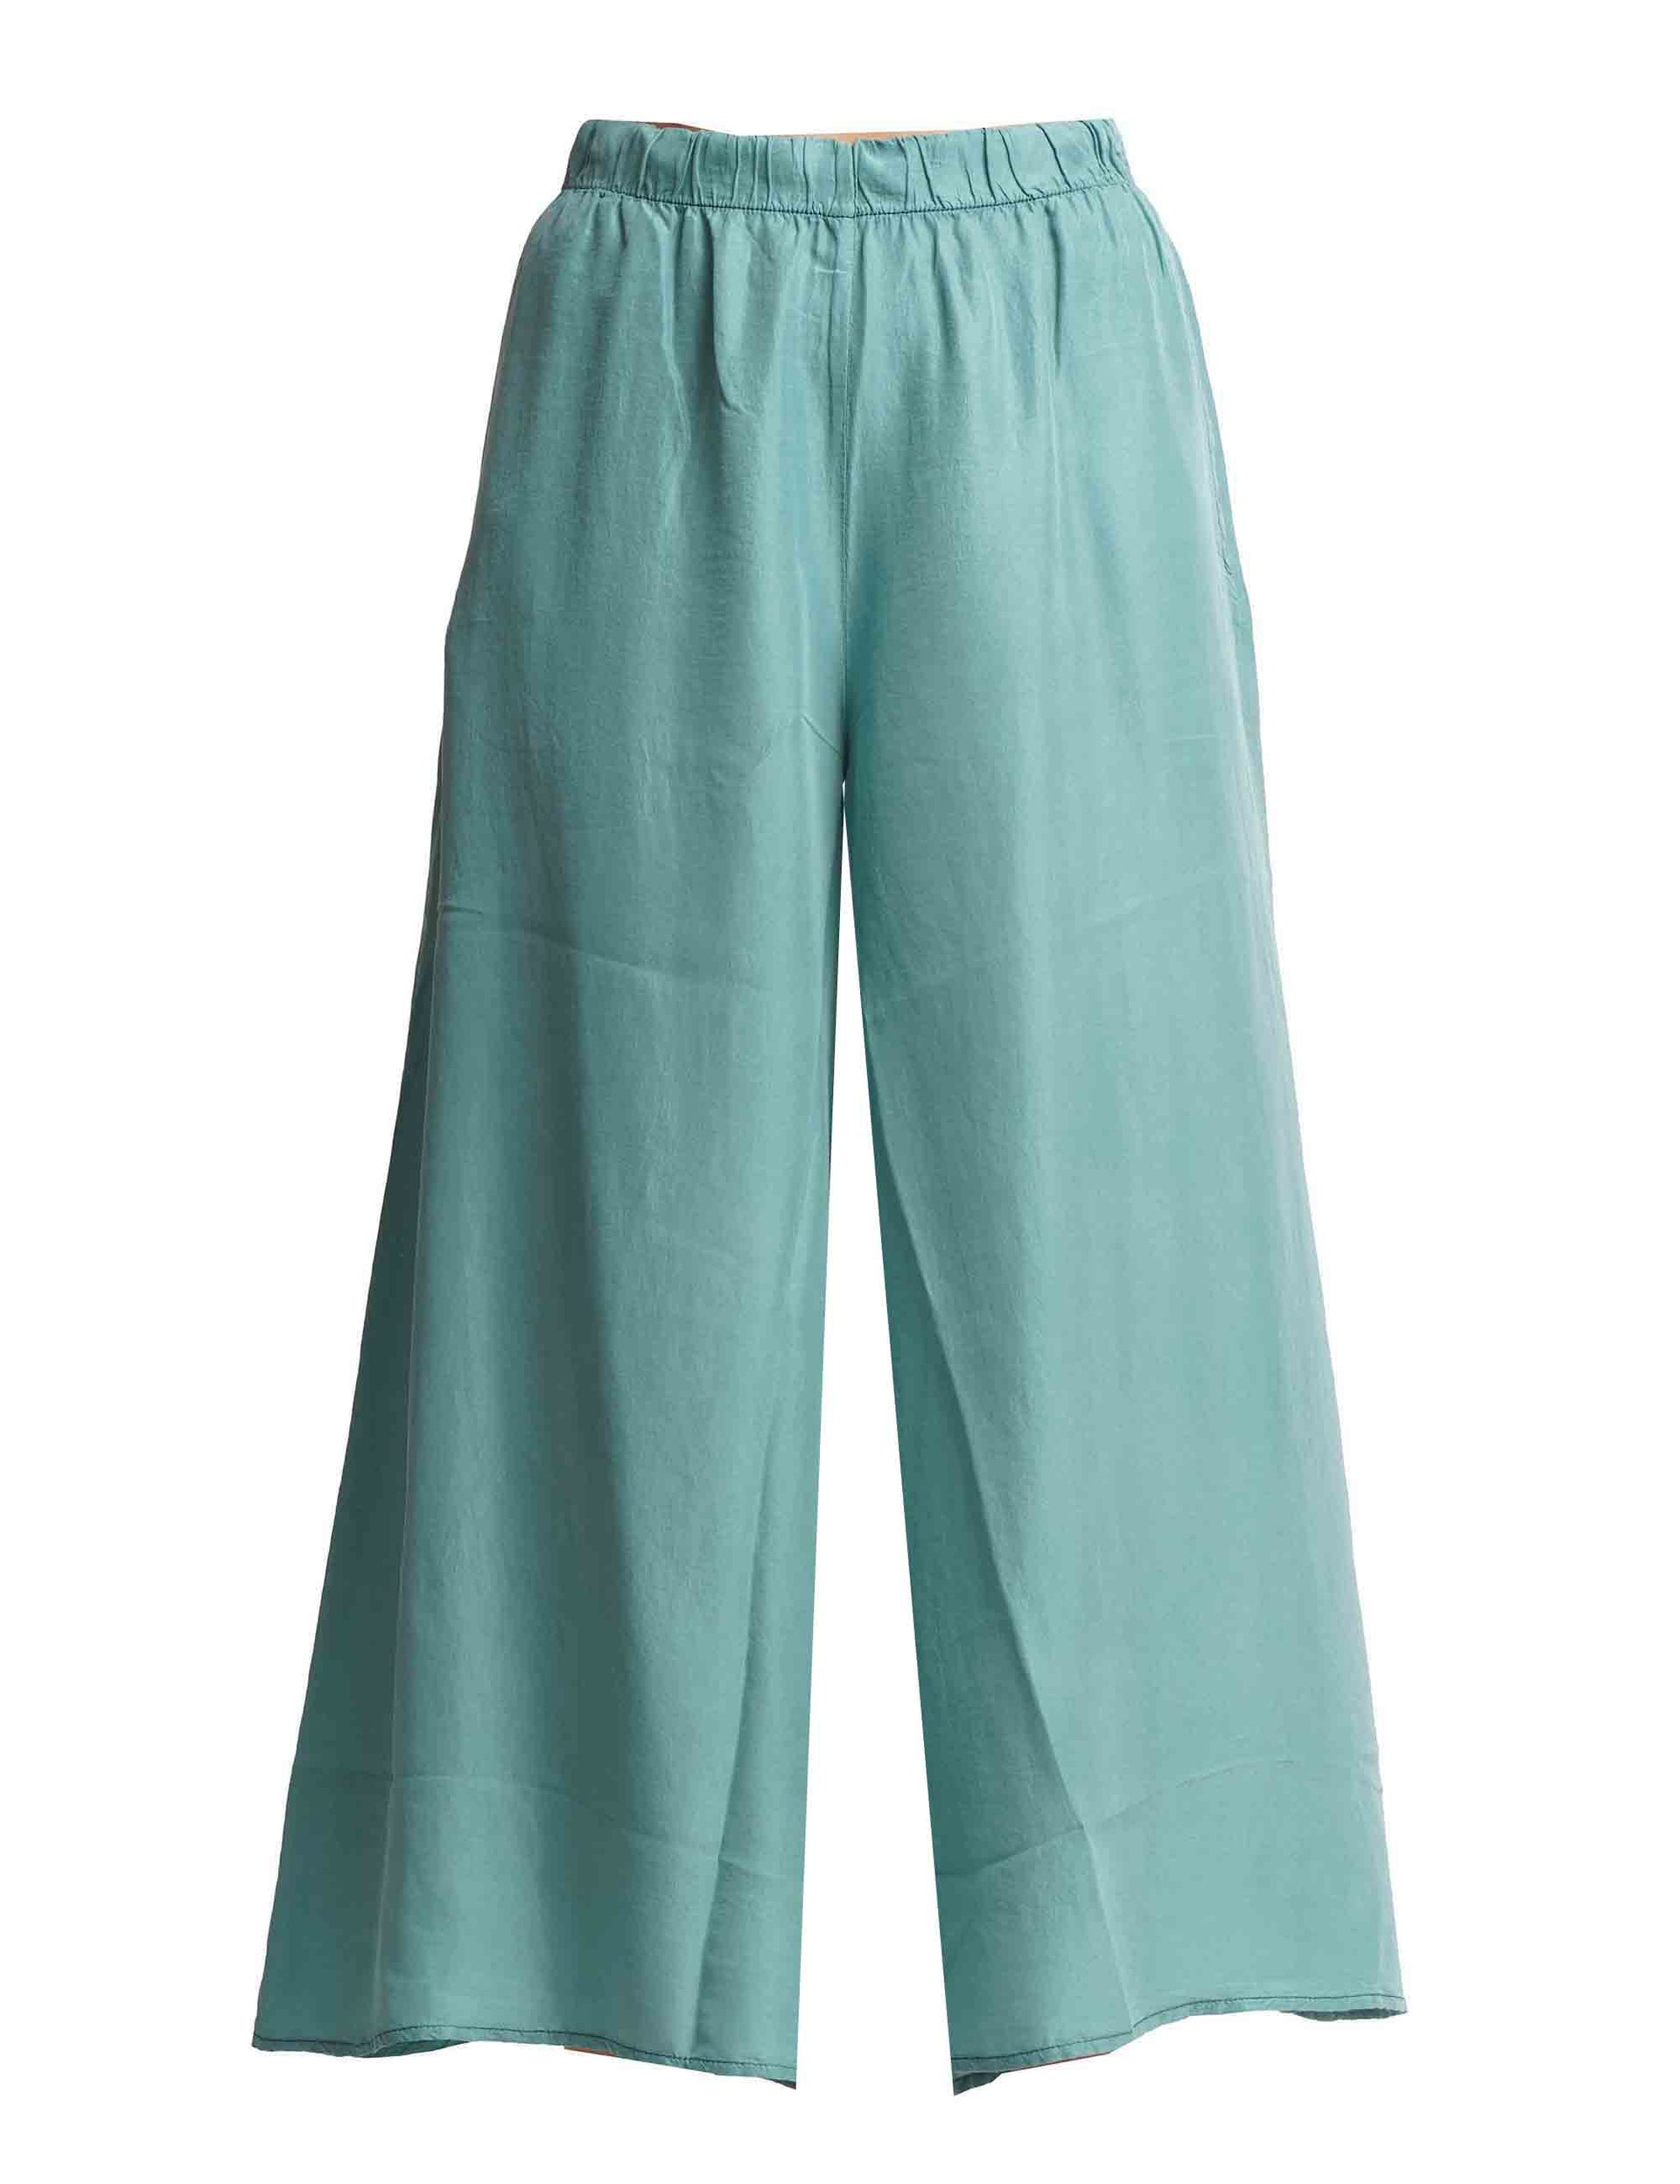 Women's wide-leg trousers in pure green silk